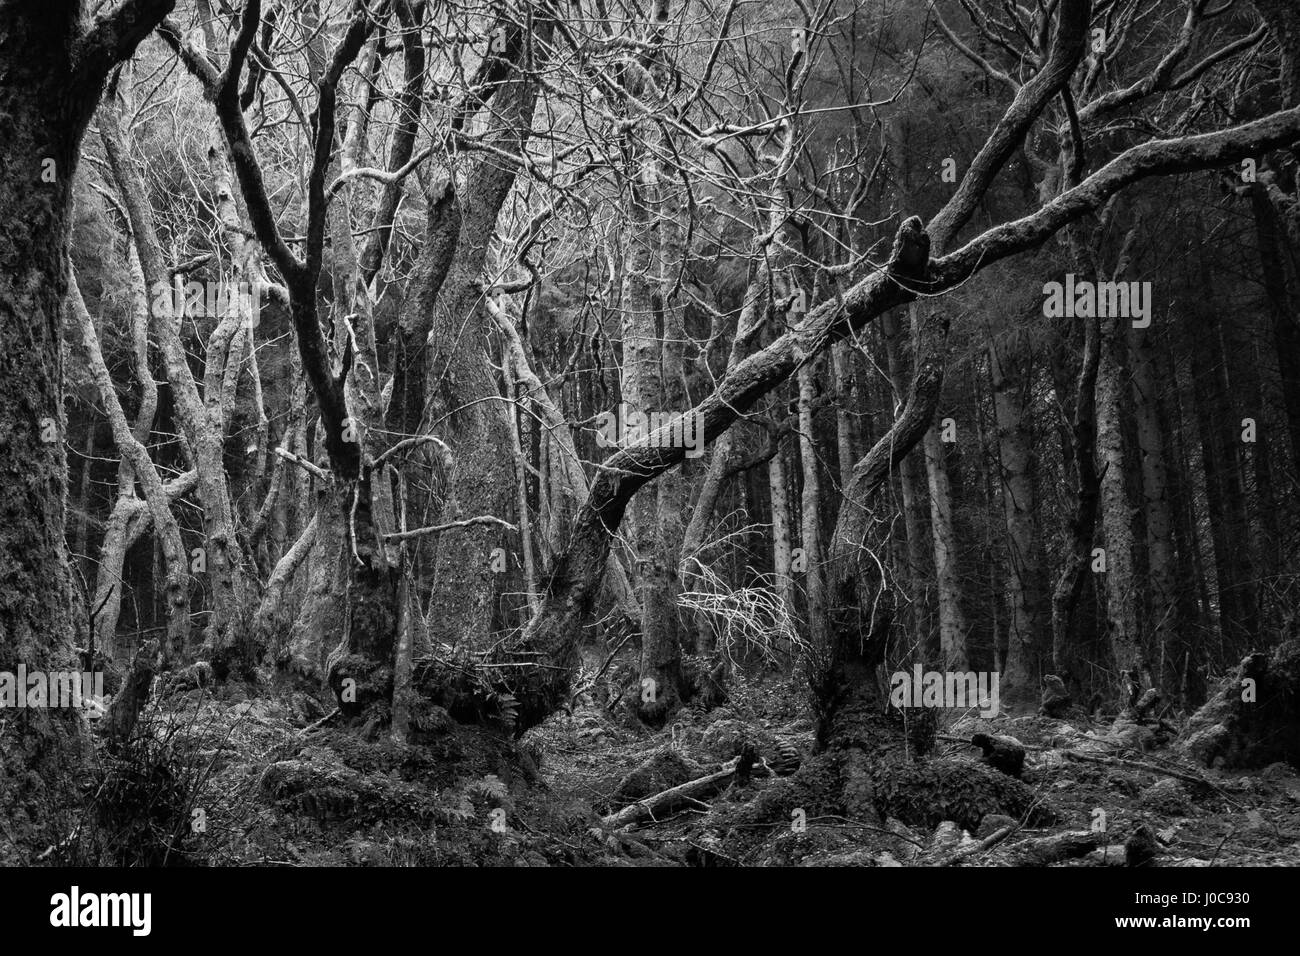 Wooodland avec scène fantasmagorique d'arbres noueux. Scène de forêt noir et blanc. Pays de Galles, UK, avril Banque D'Images